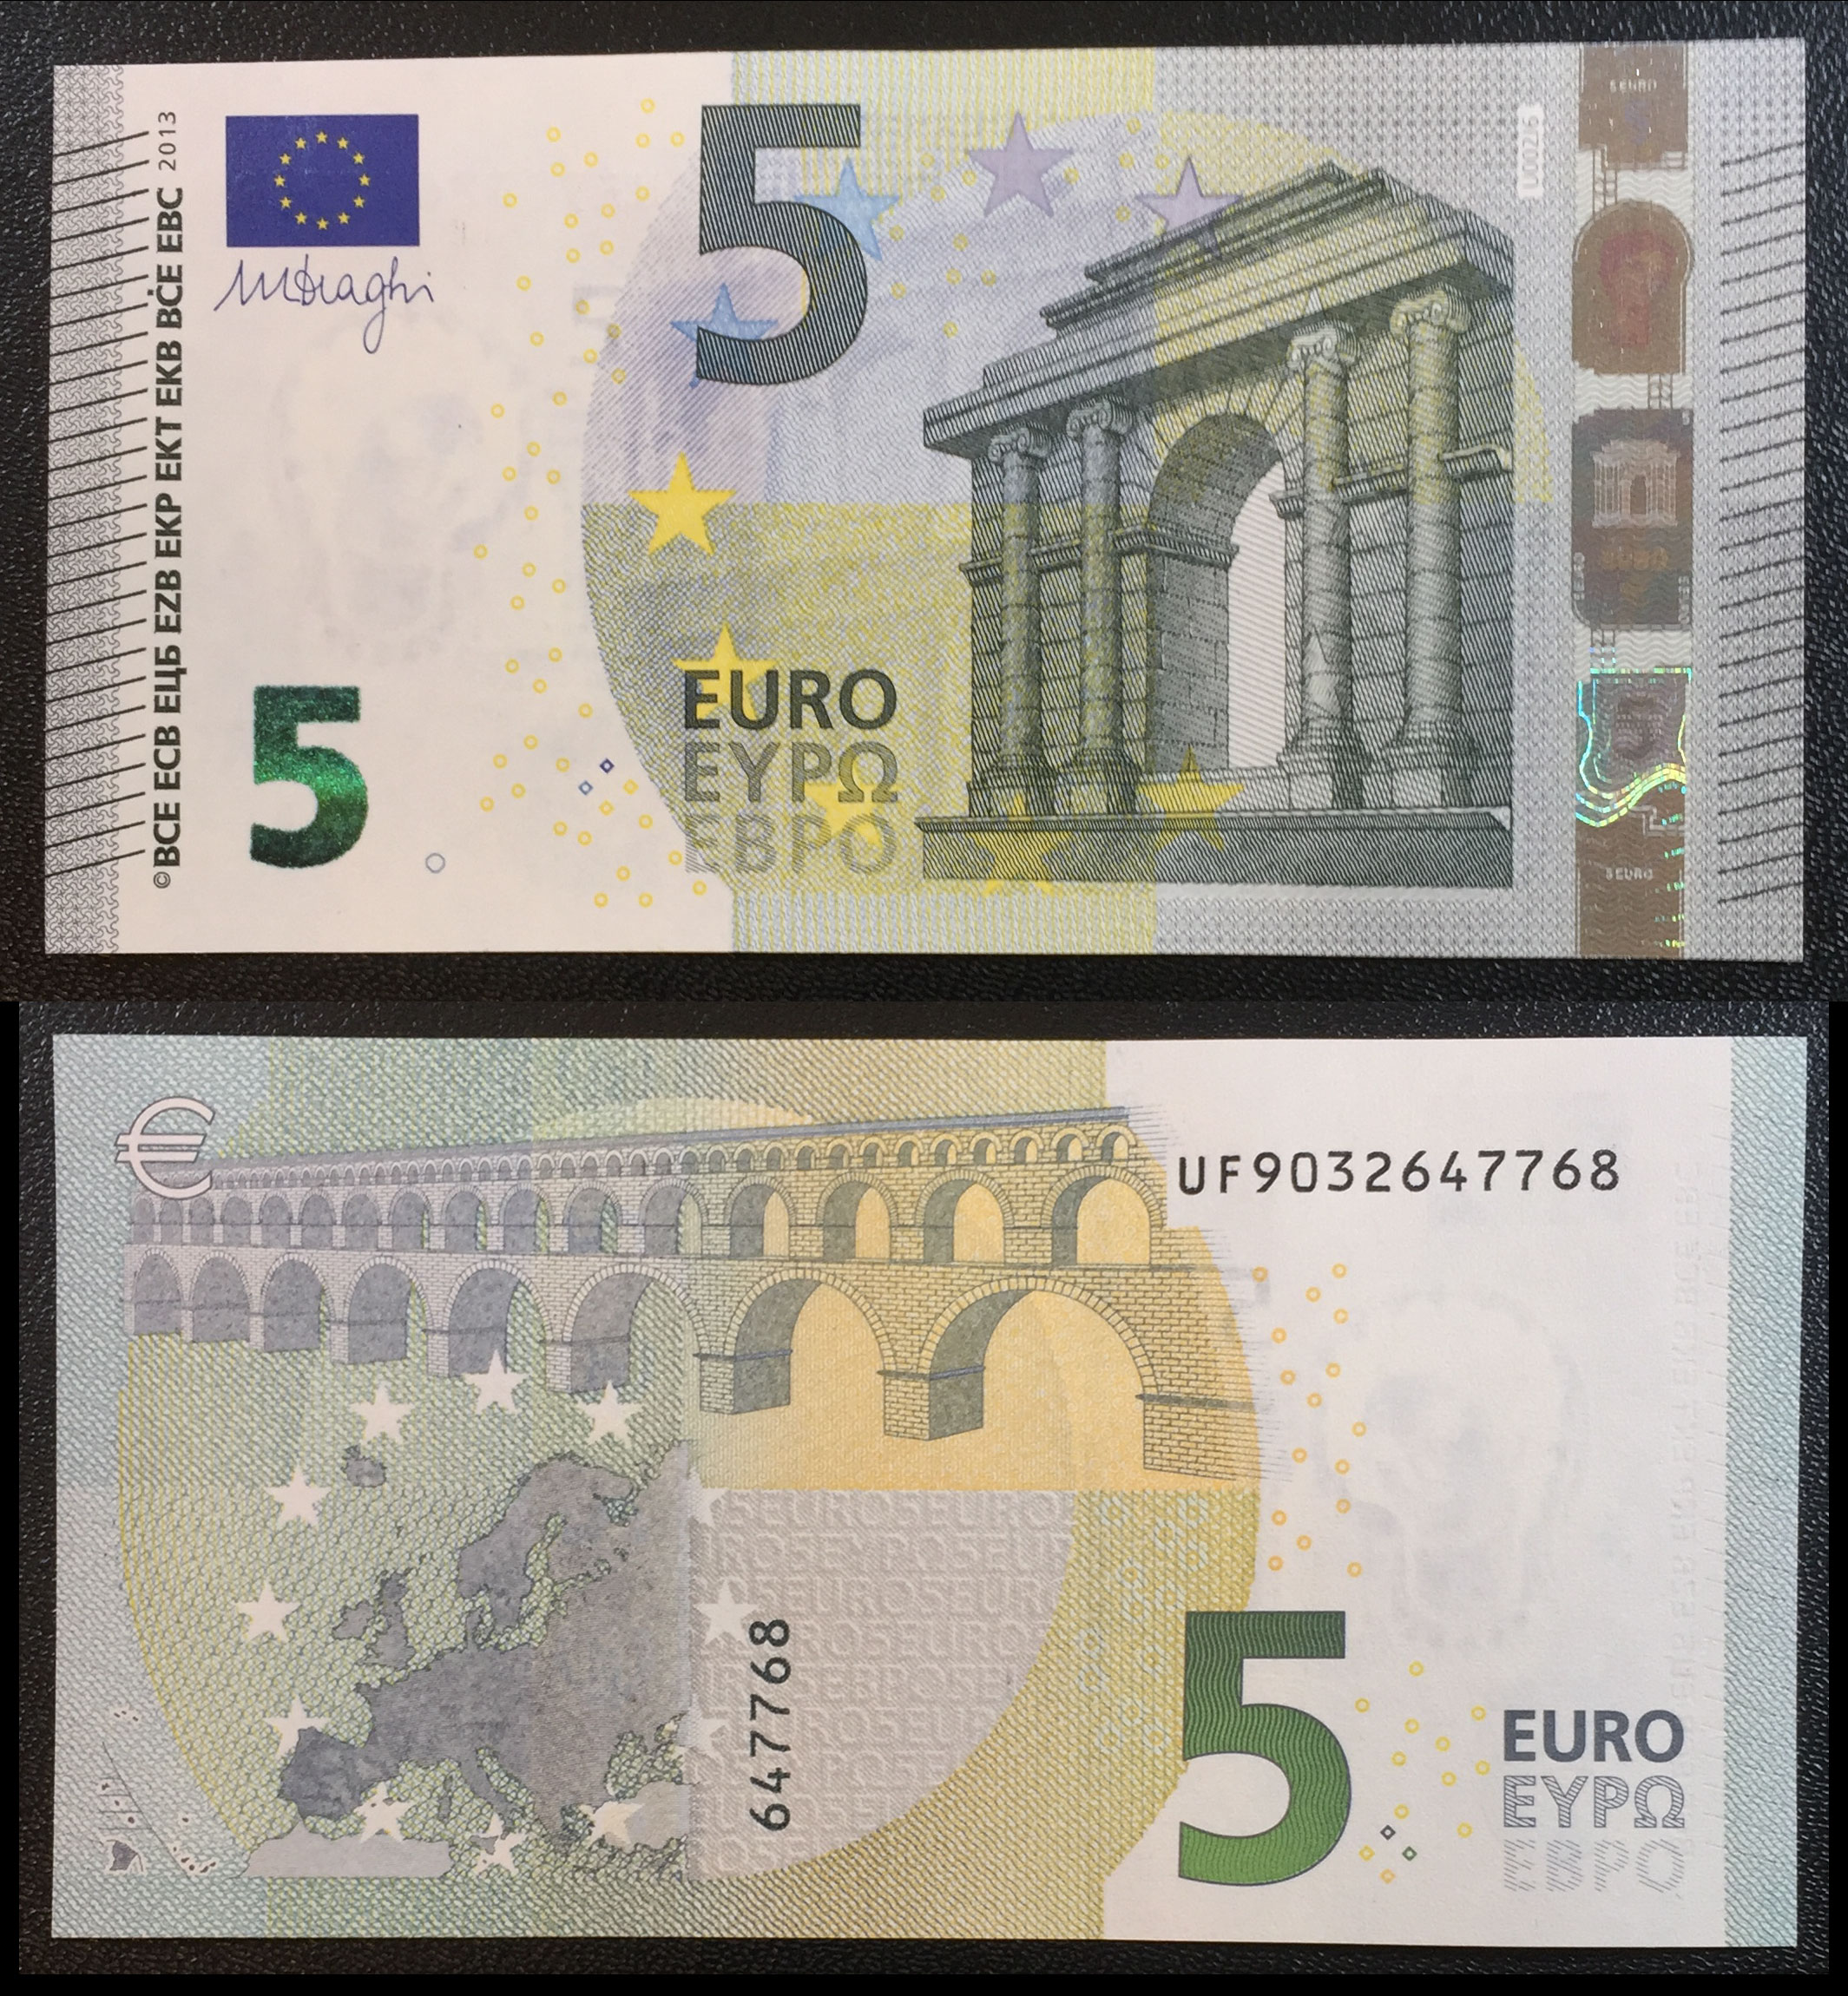 Купюра 5 евро. 5 Евро купюра. 5 Евро картинка. Как выглядит 5 евро. Картинка 5 евро купюры.